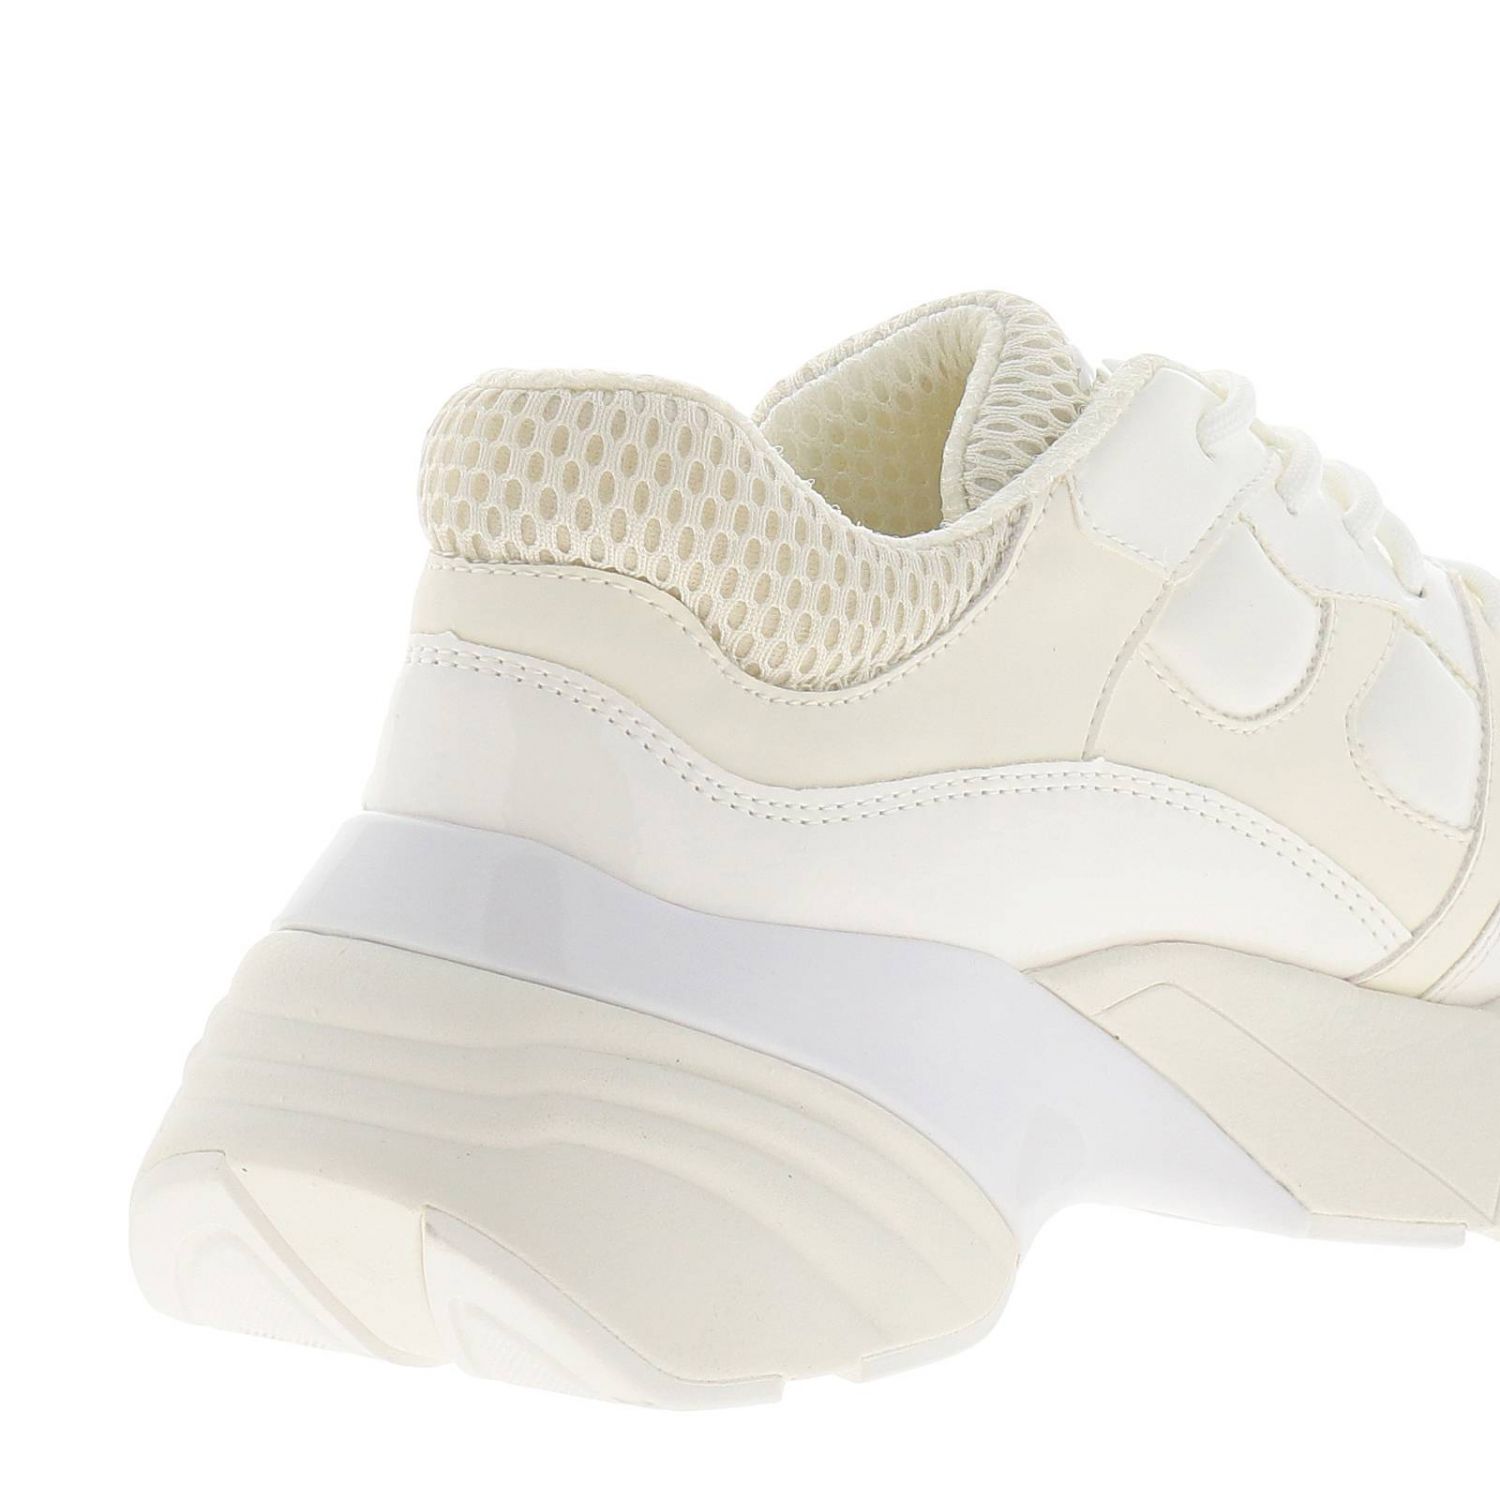 Pinko Outlet: Shoes women | Sneakers Pinko Women White | Sneakers Pinko ...